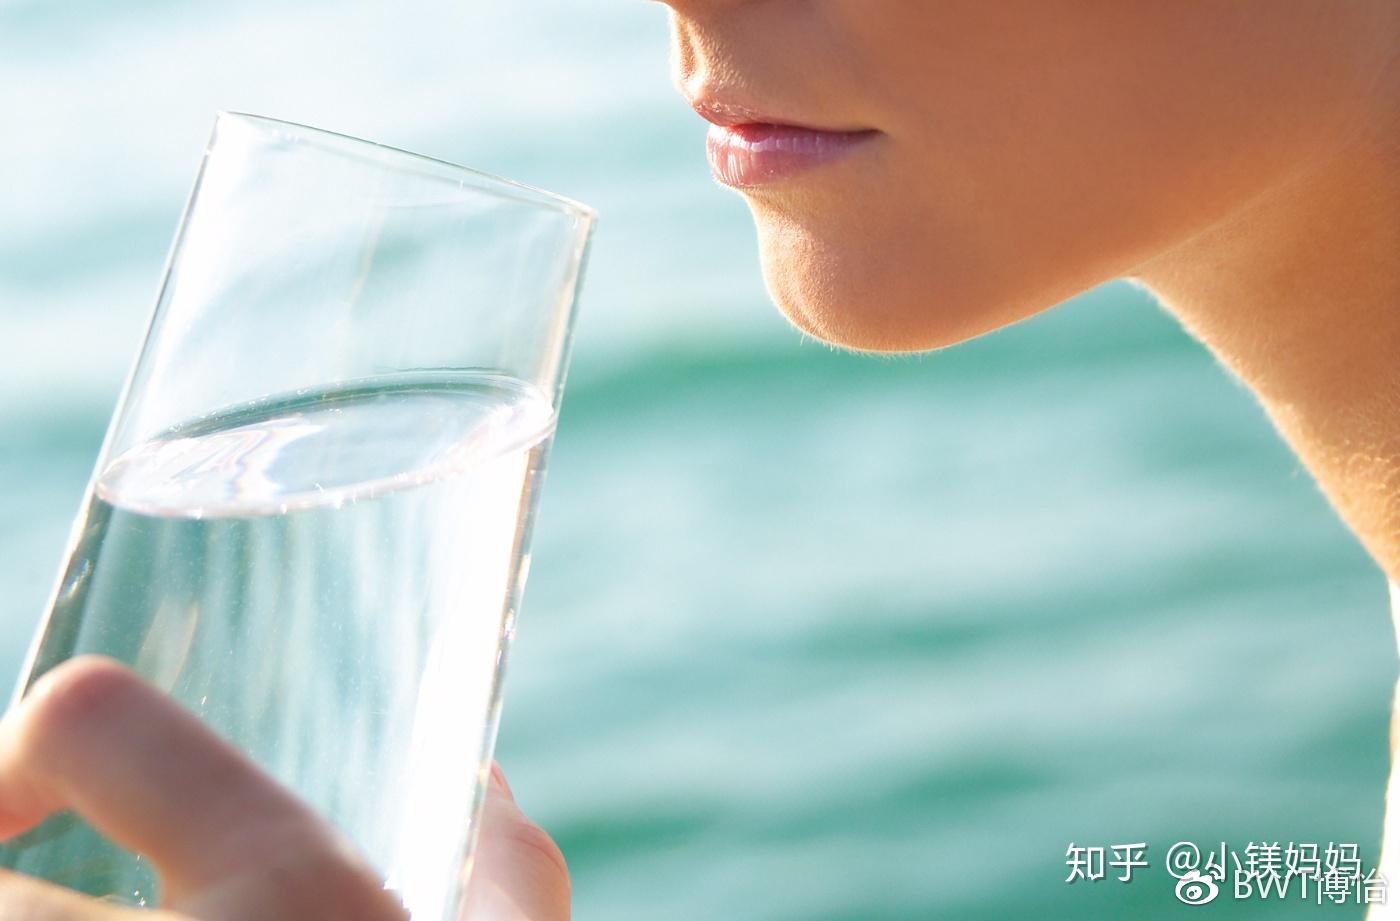 男运动员喝水-蓝牛仔影像-中国原创广告影像素材